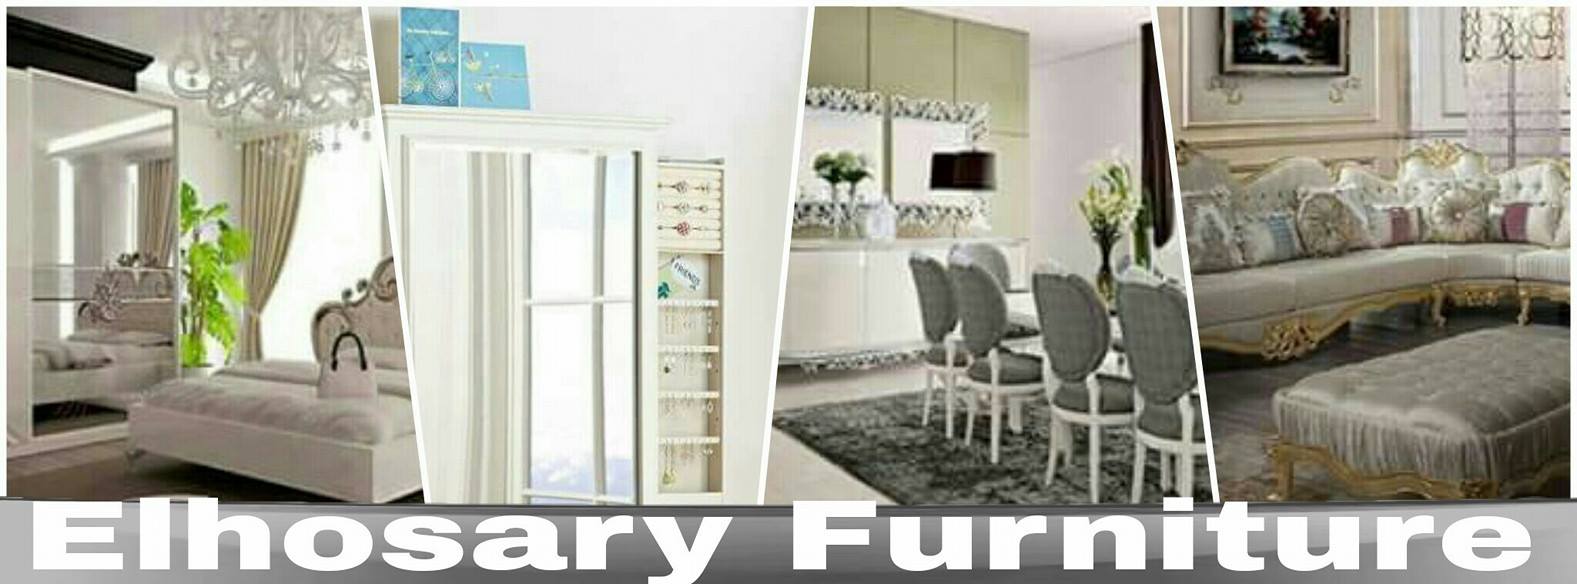 Elhosary furniture